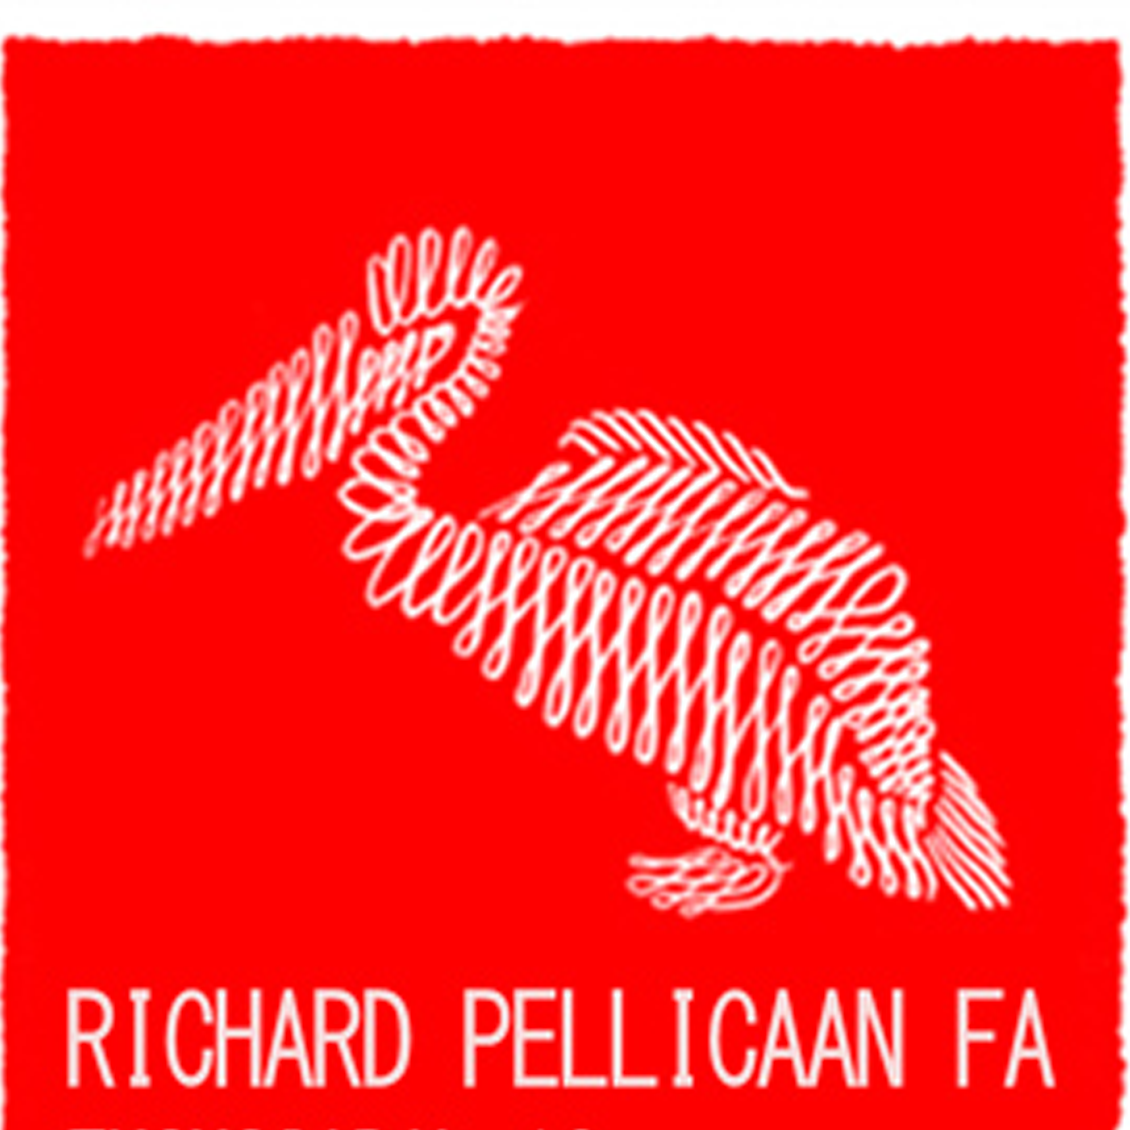 Richard Pellicaan